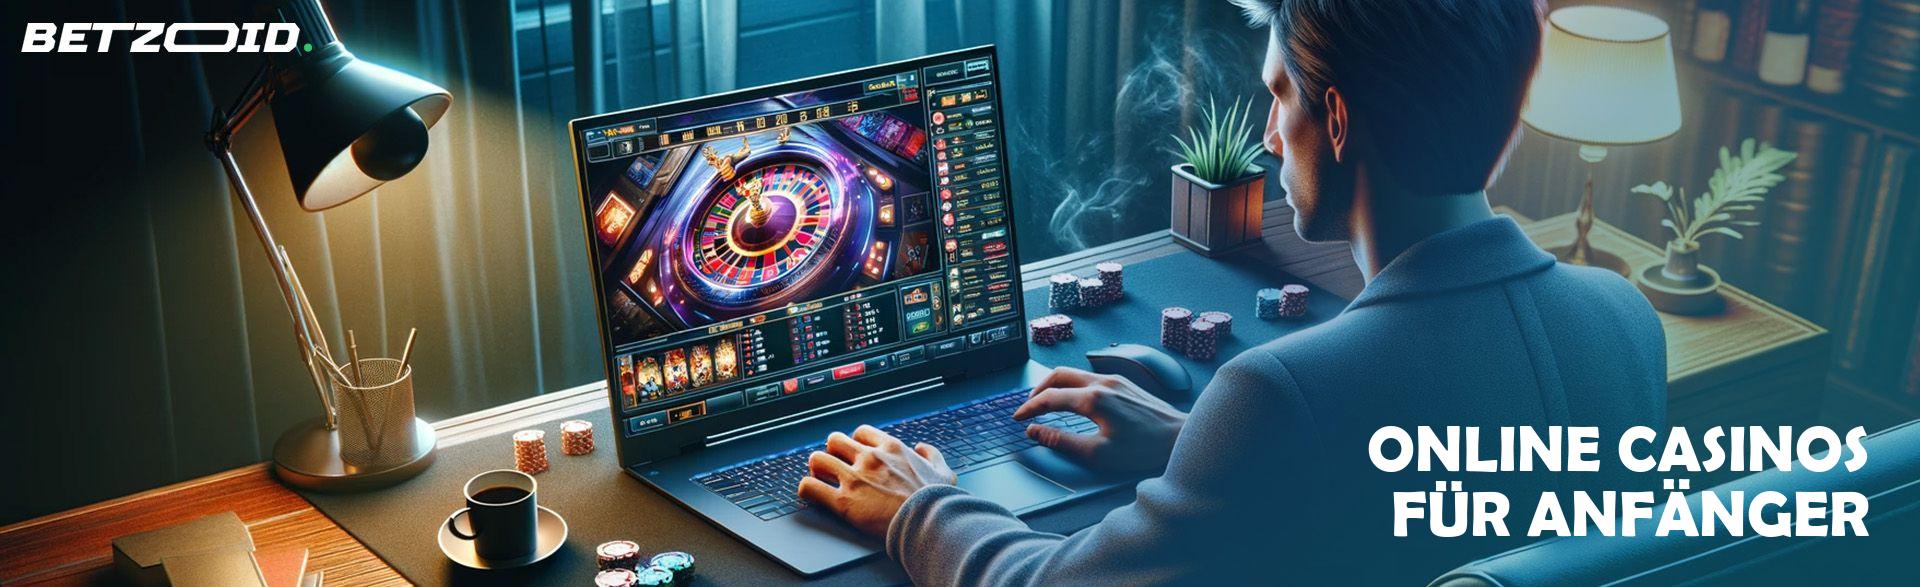 Online Casinos für Anfänger.